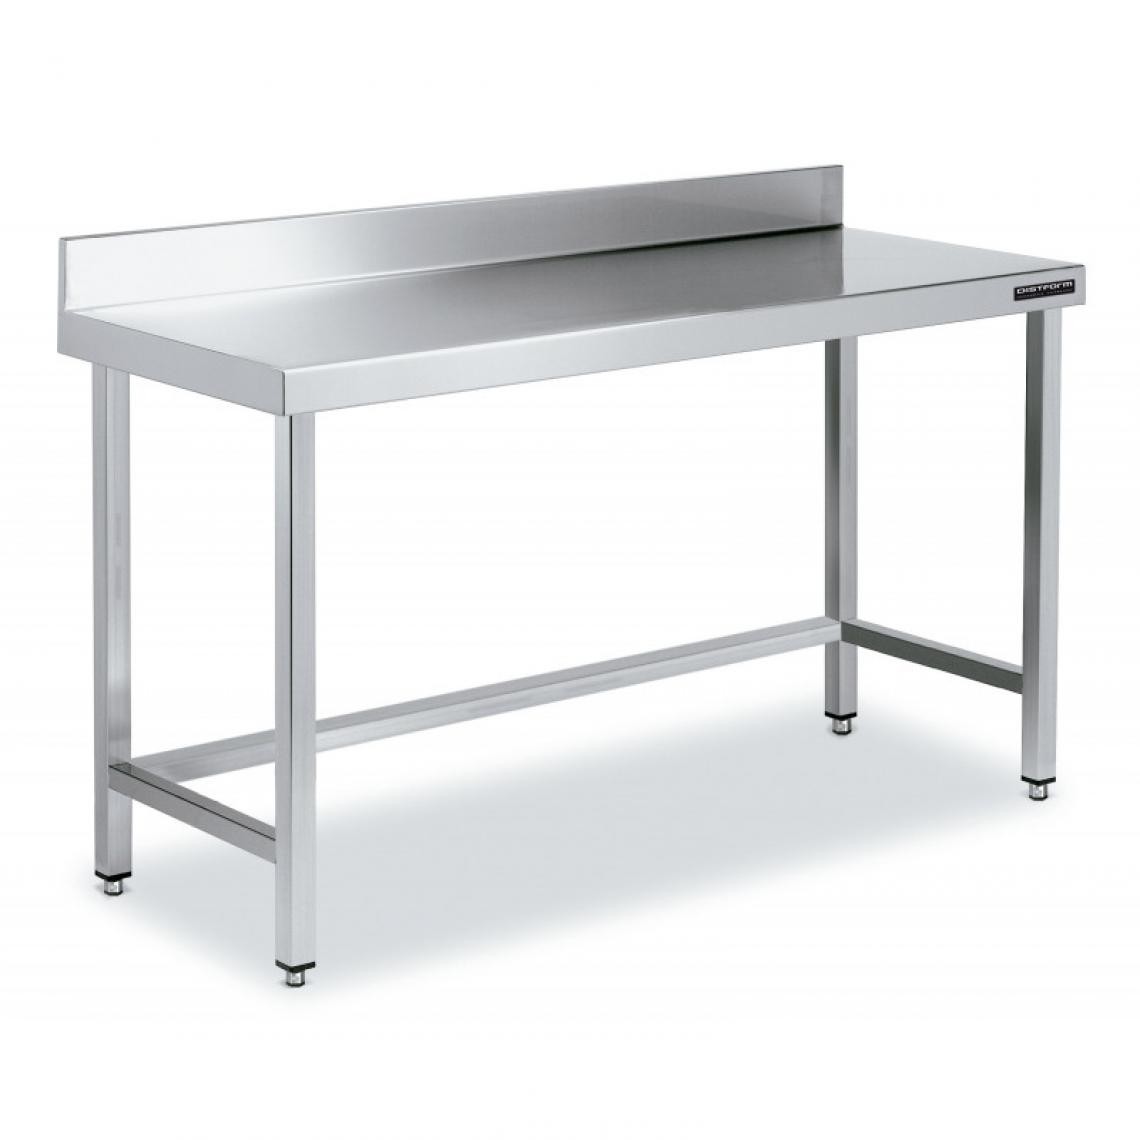 DISTFORM - Table de Travail Adossée Inox avec Renforts - Gamme 600 - Hauteur 600 - Distform - Acier inoxydable2200x600 - Tables à manger